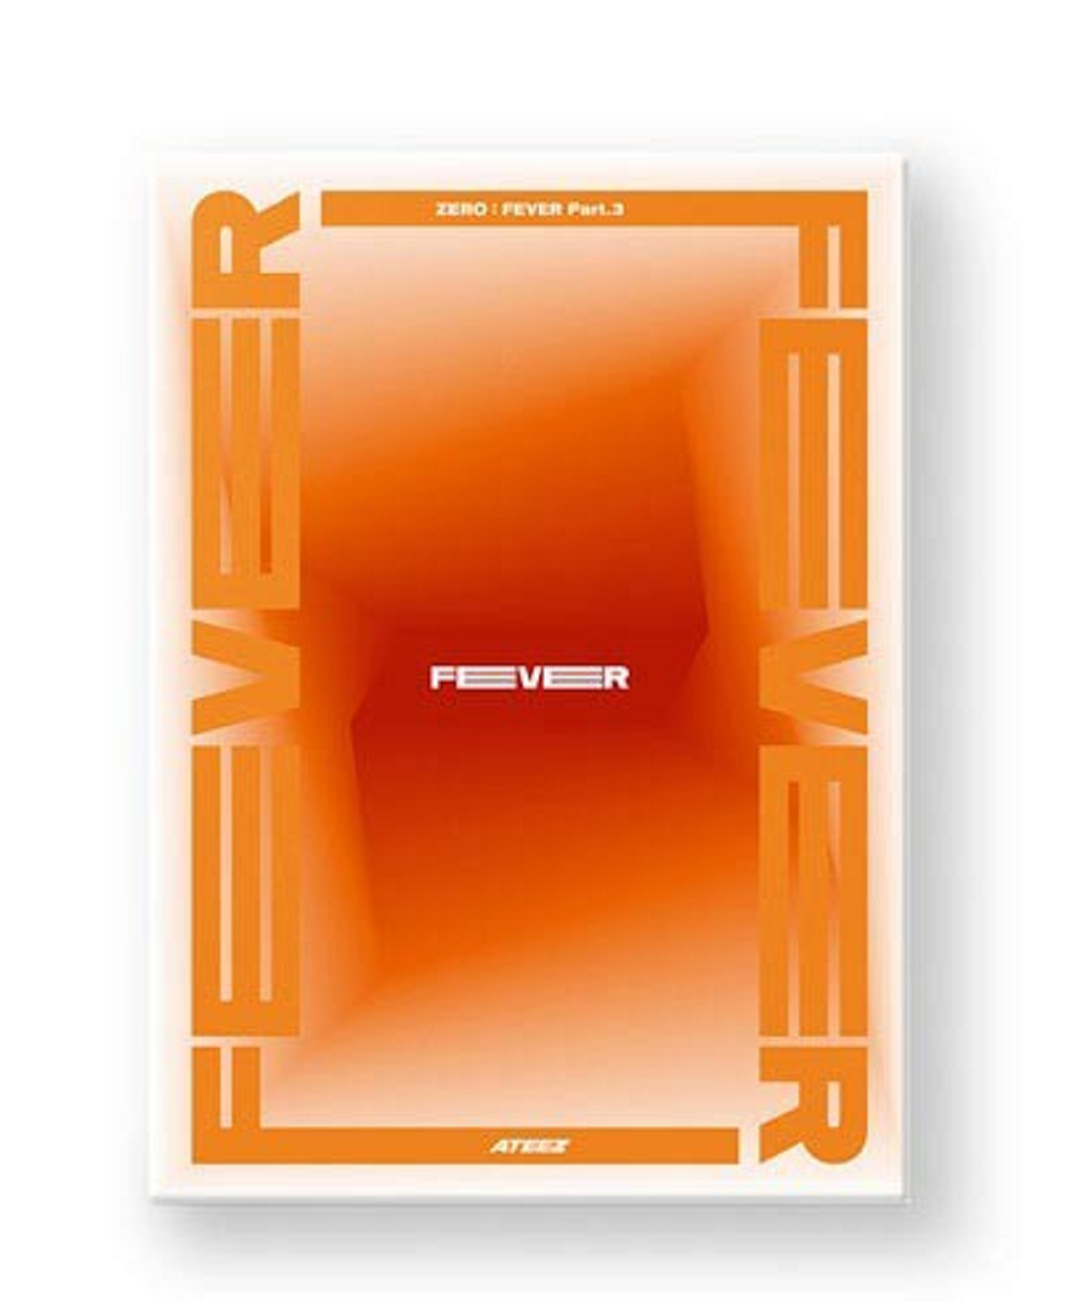 ATEEZ - ZERO : FEVER Part.3 - Orange